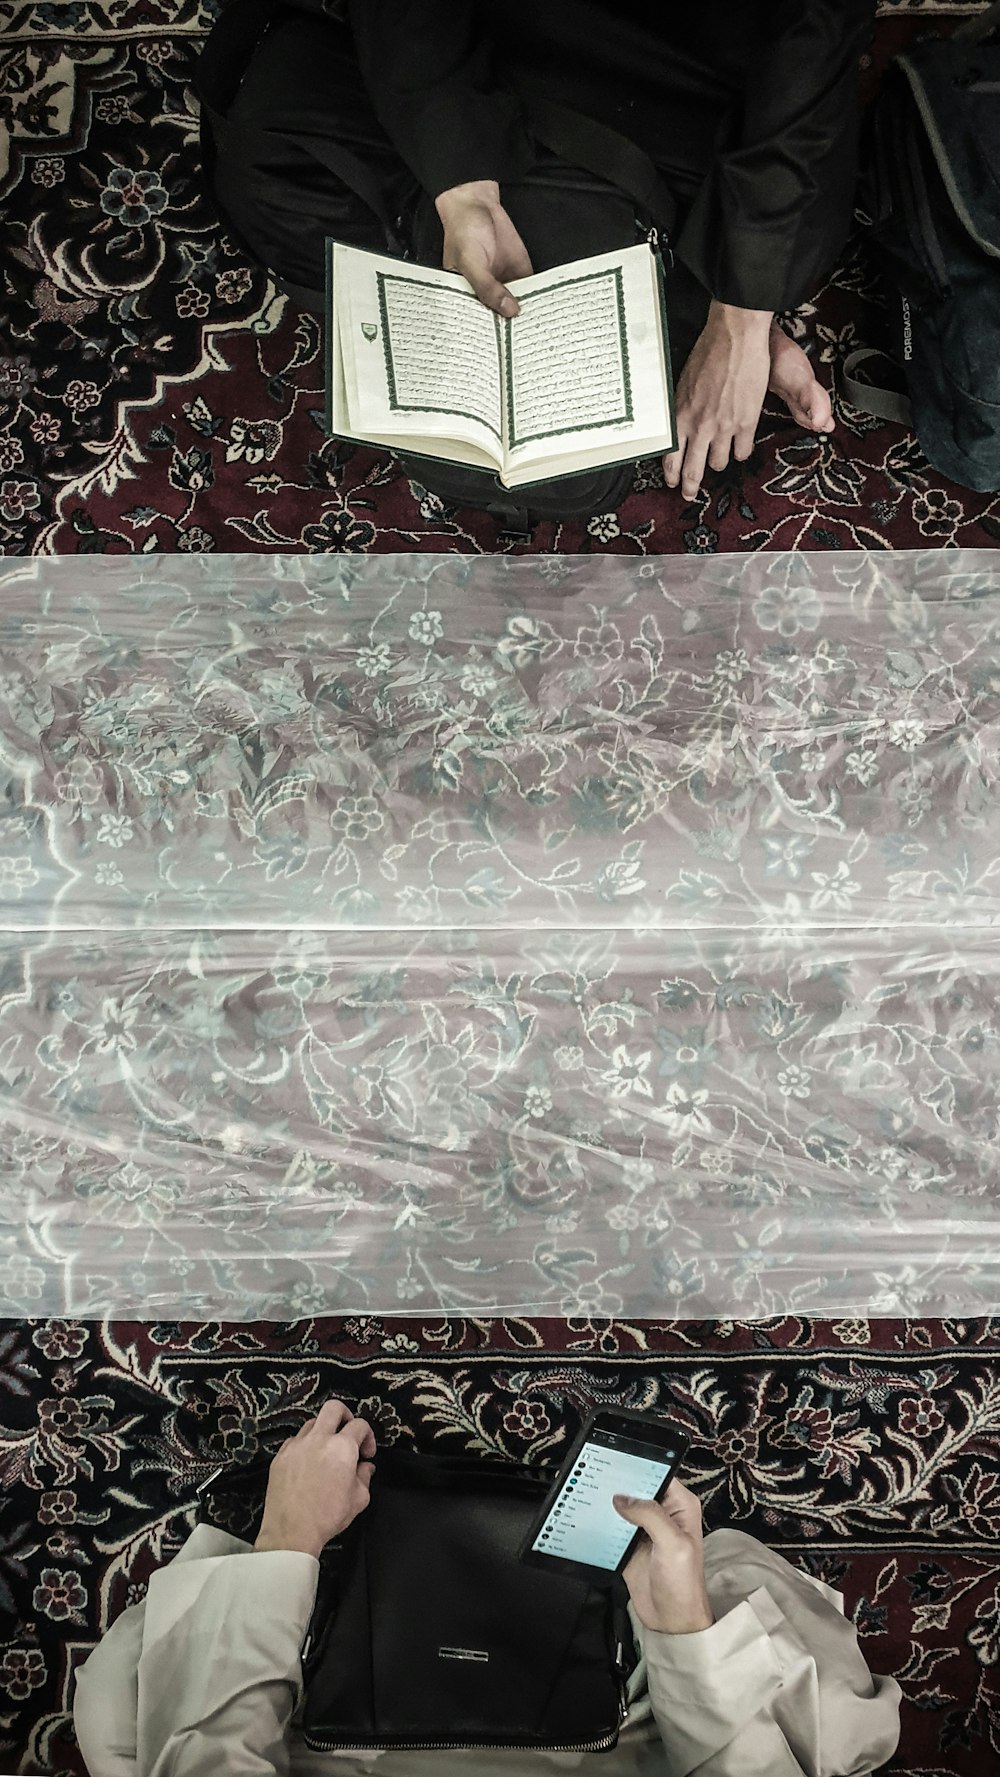 zwei Personen, die auf einem Teppich sitzen, eine mit dem Koran und die andere mit Smartphone